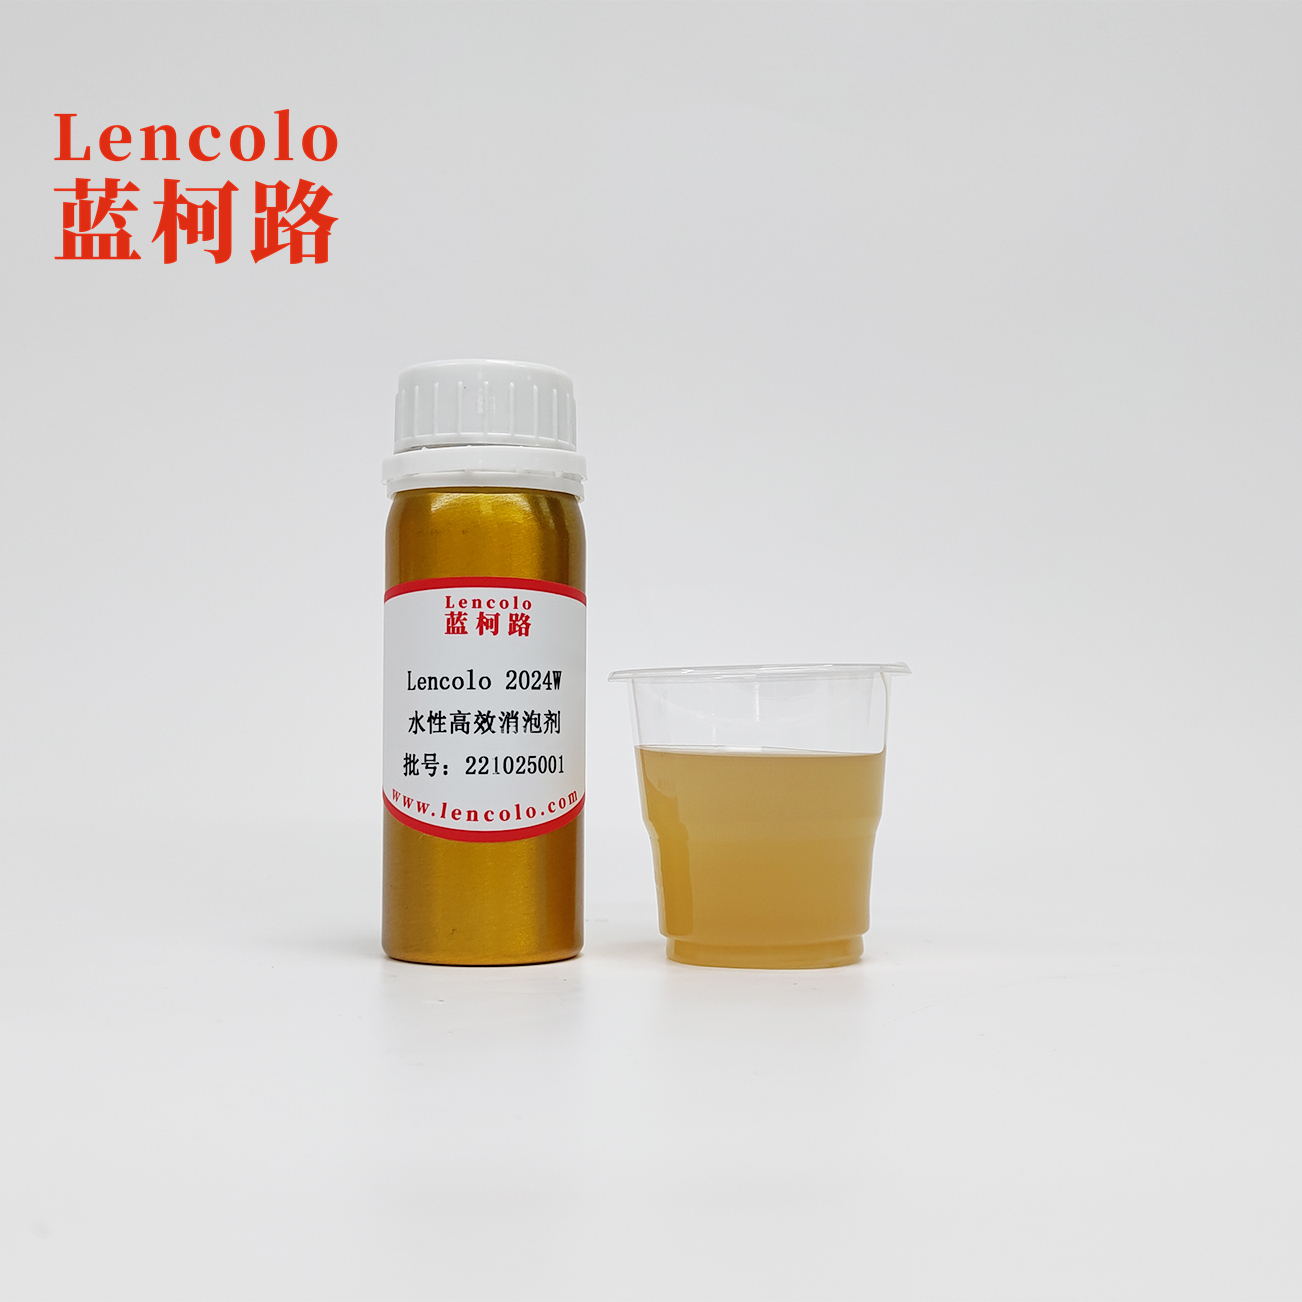 Lencolo 2024W  Water-based High-efficiency Defoamer